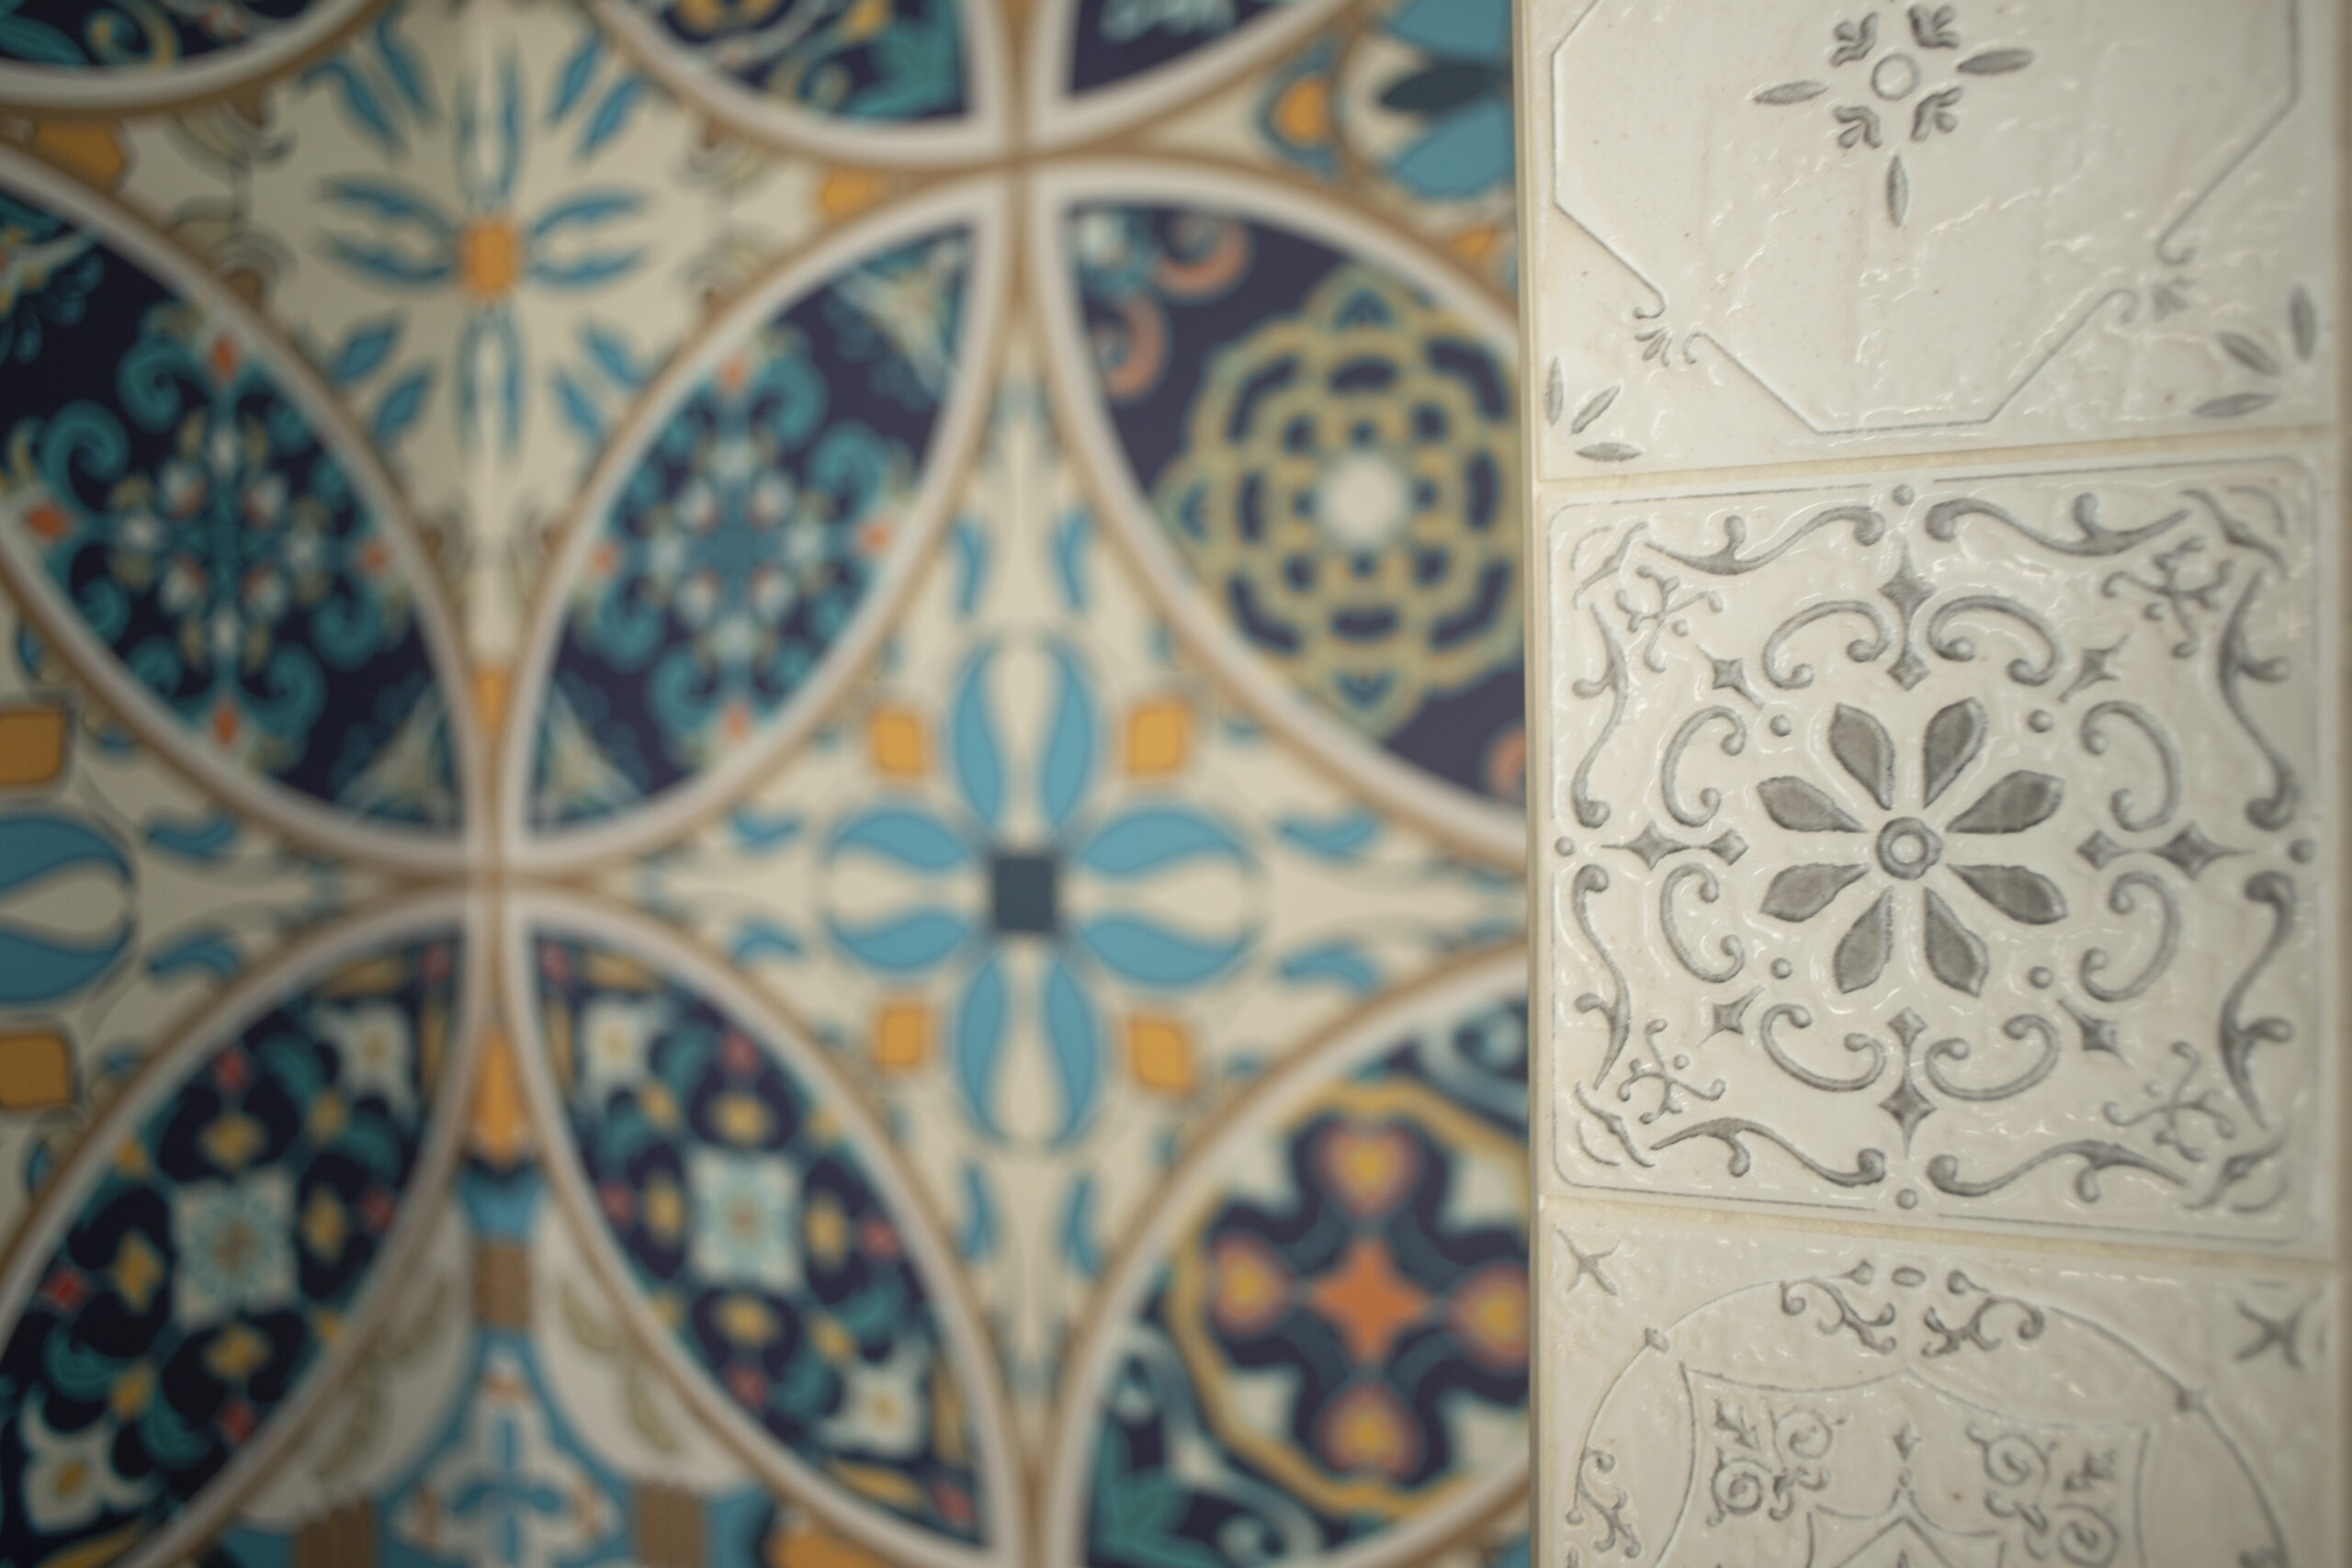 Tapeta w stylu hiszpańskiej ceramiki inspirowana naszą nazwą.